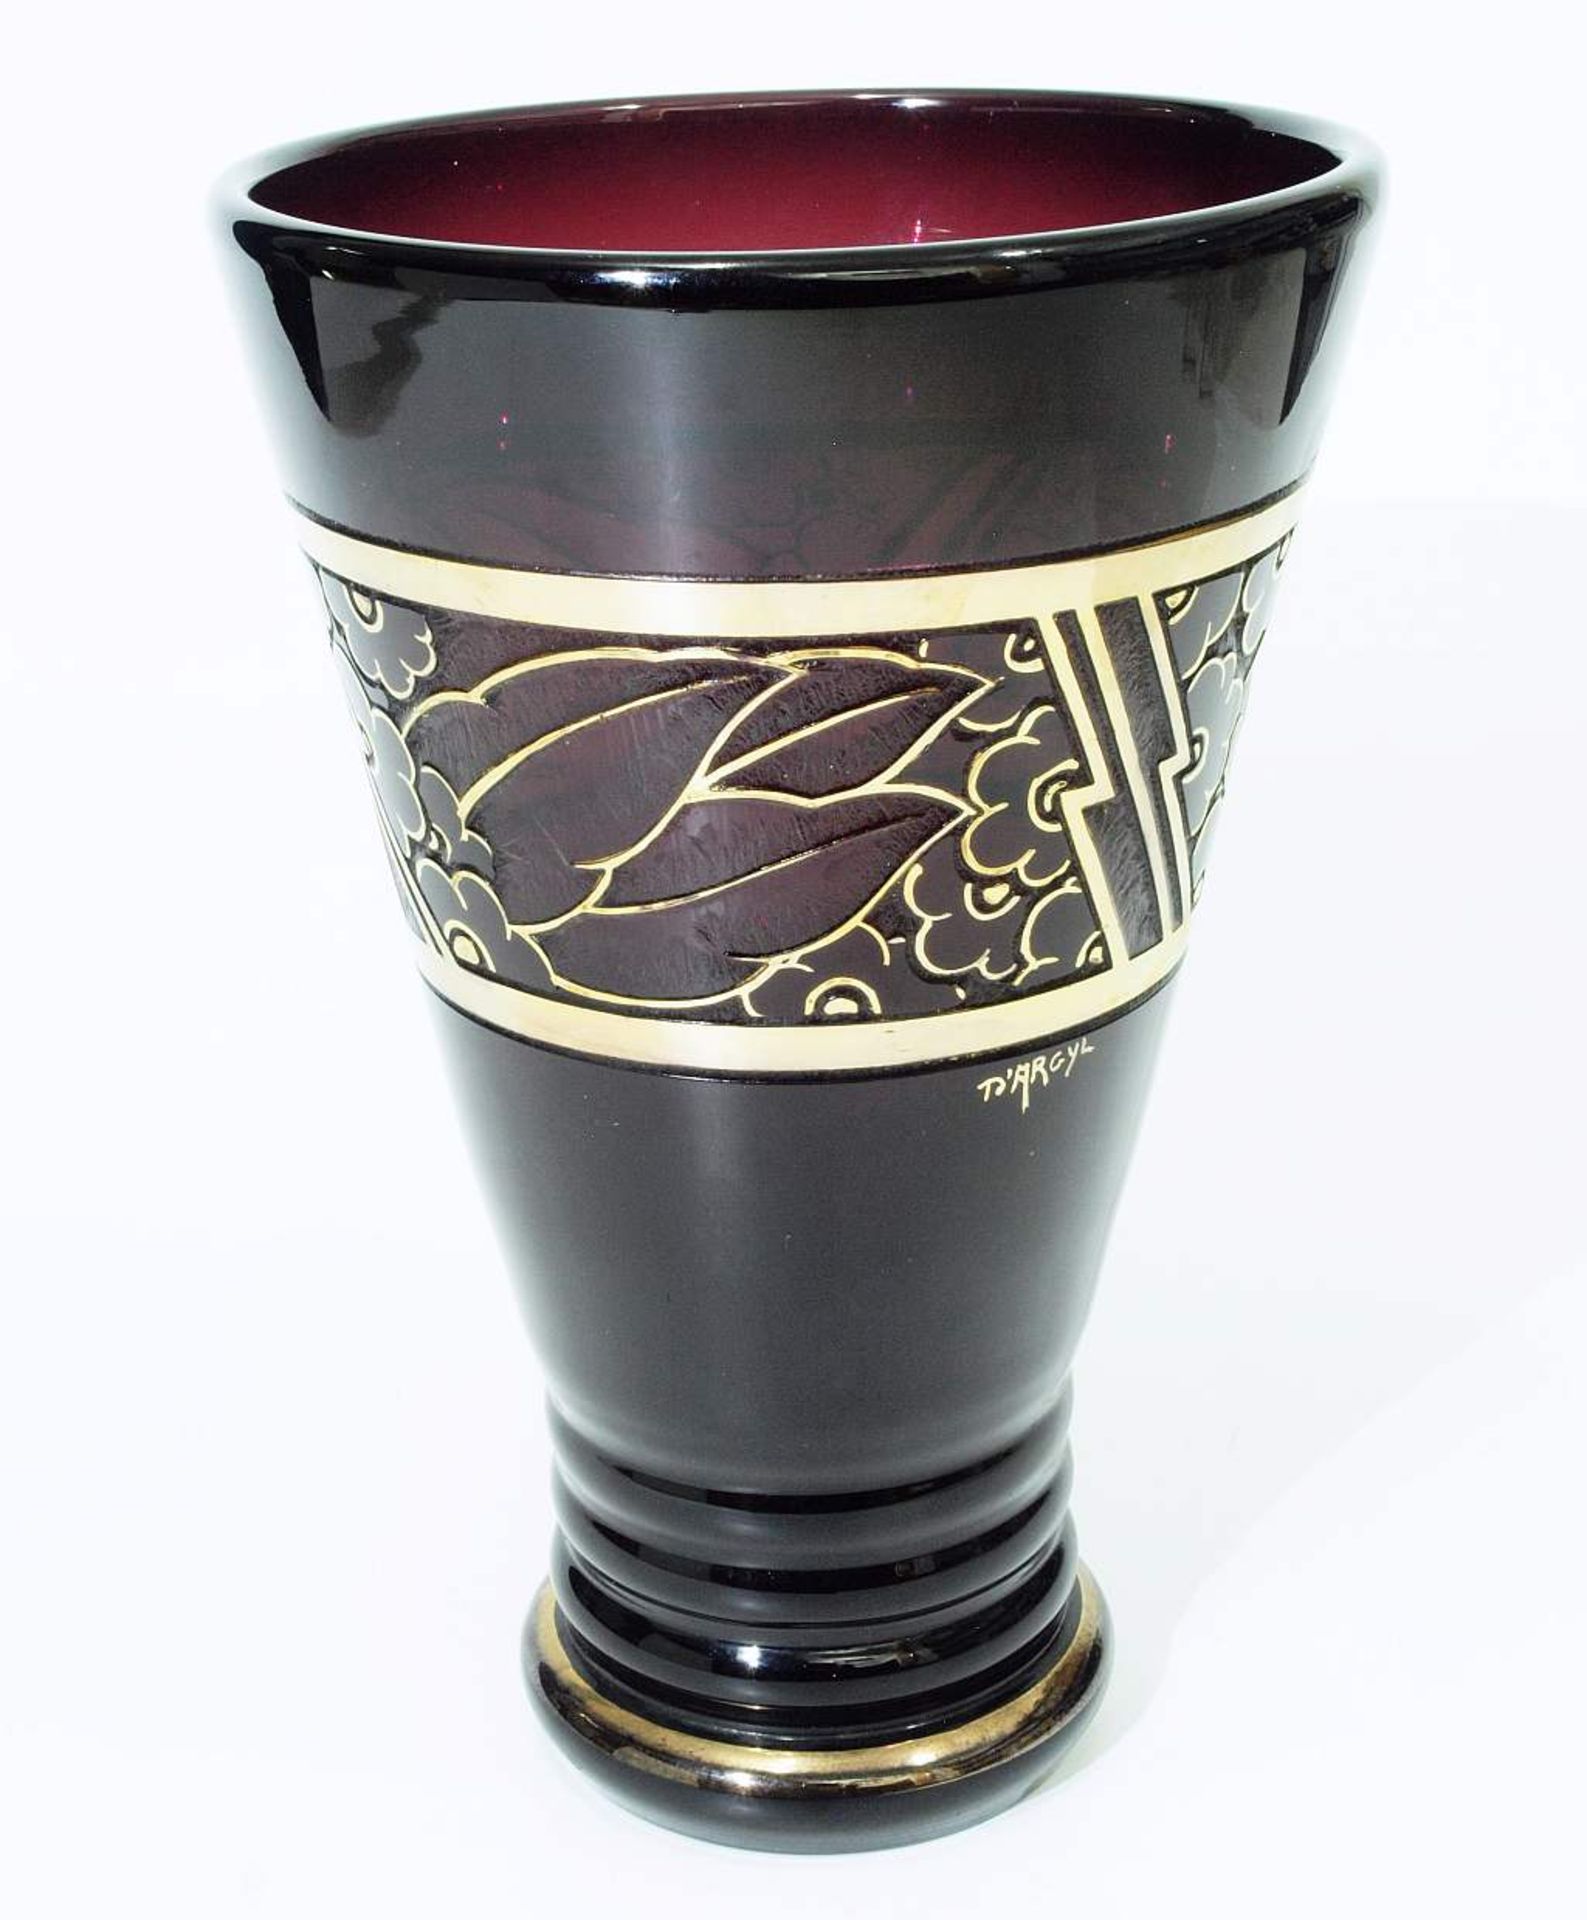 Vase.Vase. D'ARGYL, Frankreich. Lilafarbenes Glas, konischer Korpus über rundem abgesetztem Standfuß - Bild 2 aus 6